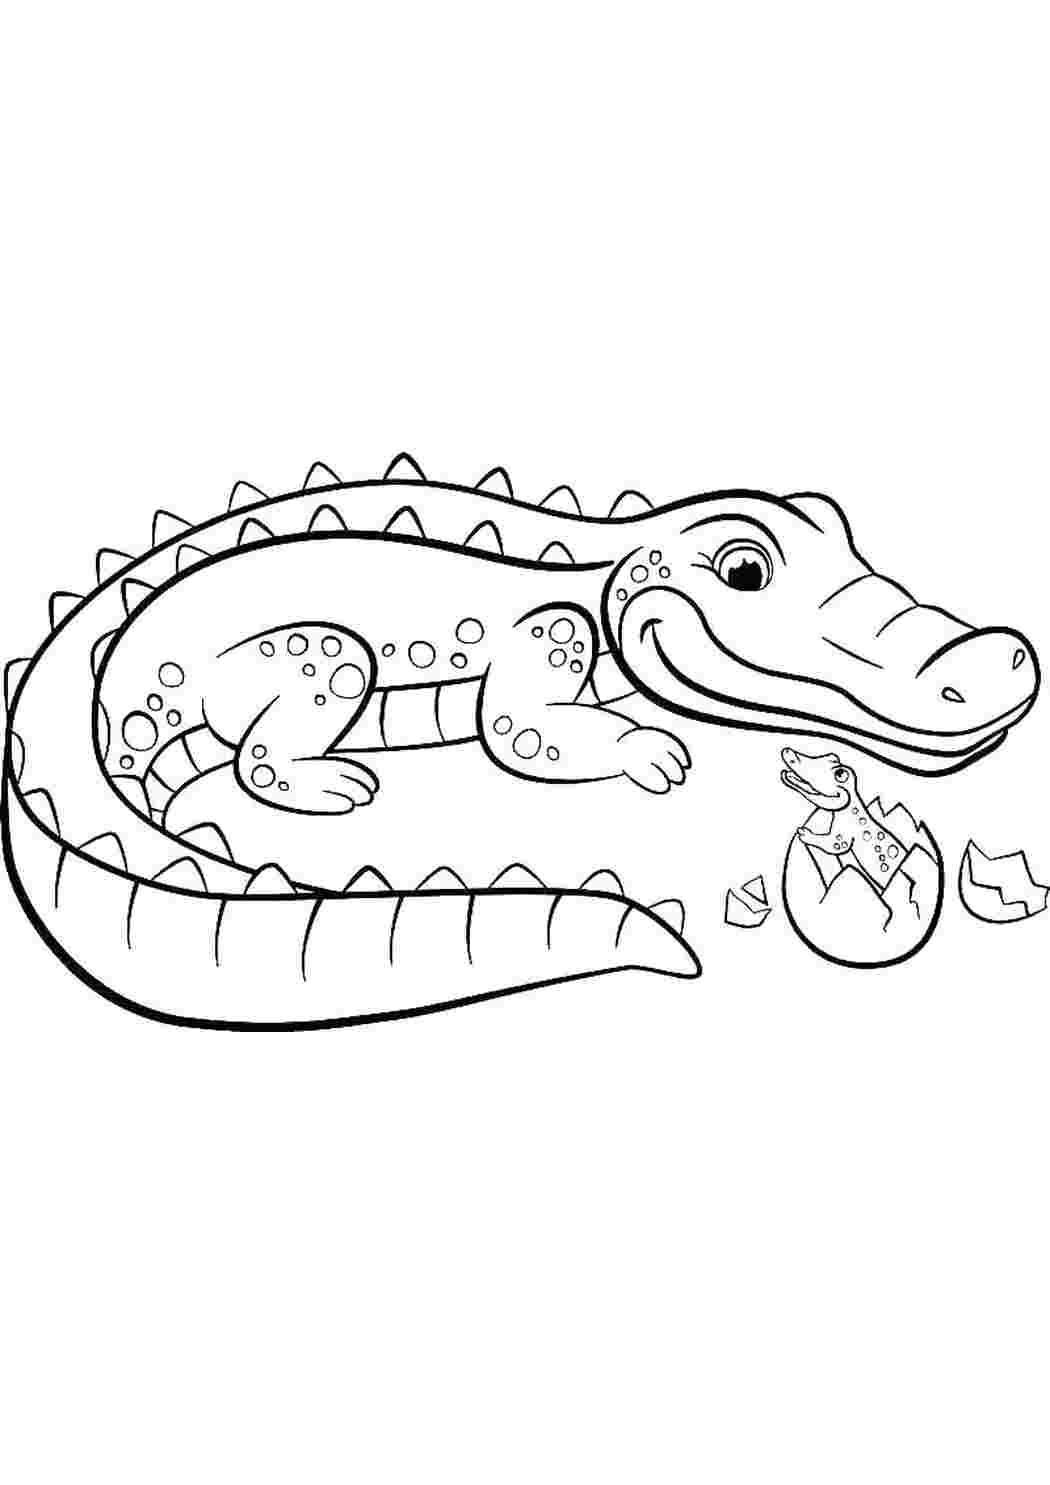 Крокодил картинка для детей раскраска